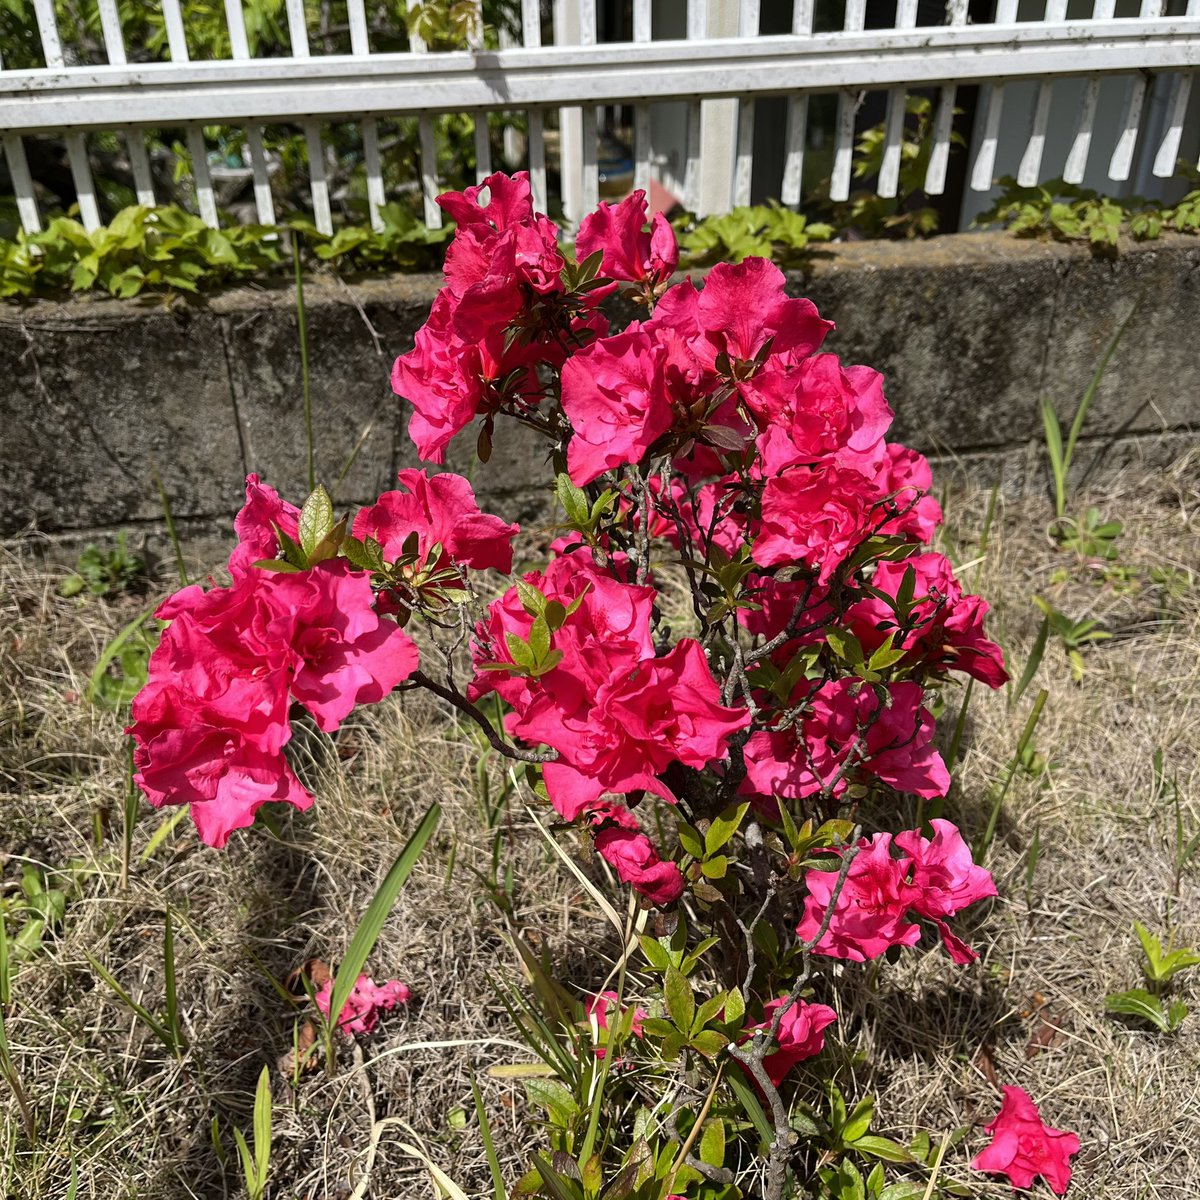 庭に咲いている､鮮やかな赤い色のアザレアの花。Bright red flowers that seem like Belgian hybrid azalea (Rhododendron simsii). They are blooming in my garden🌺 #アザレア #花 #花が好き #春 #4月 #azalea #flower #Blume #fleur #flore #spring #April #flowerlover #Frühling #Blumenliebe